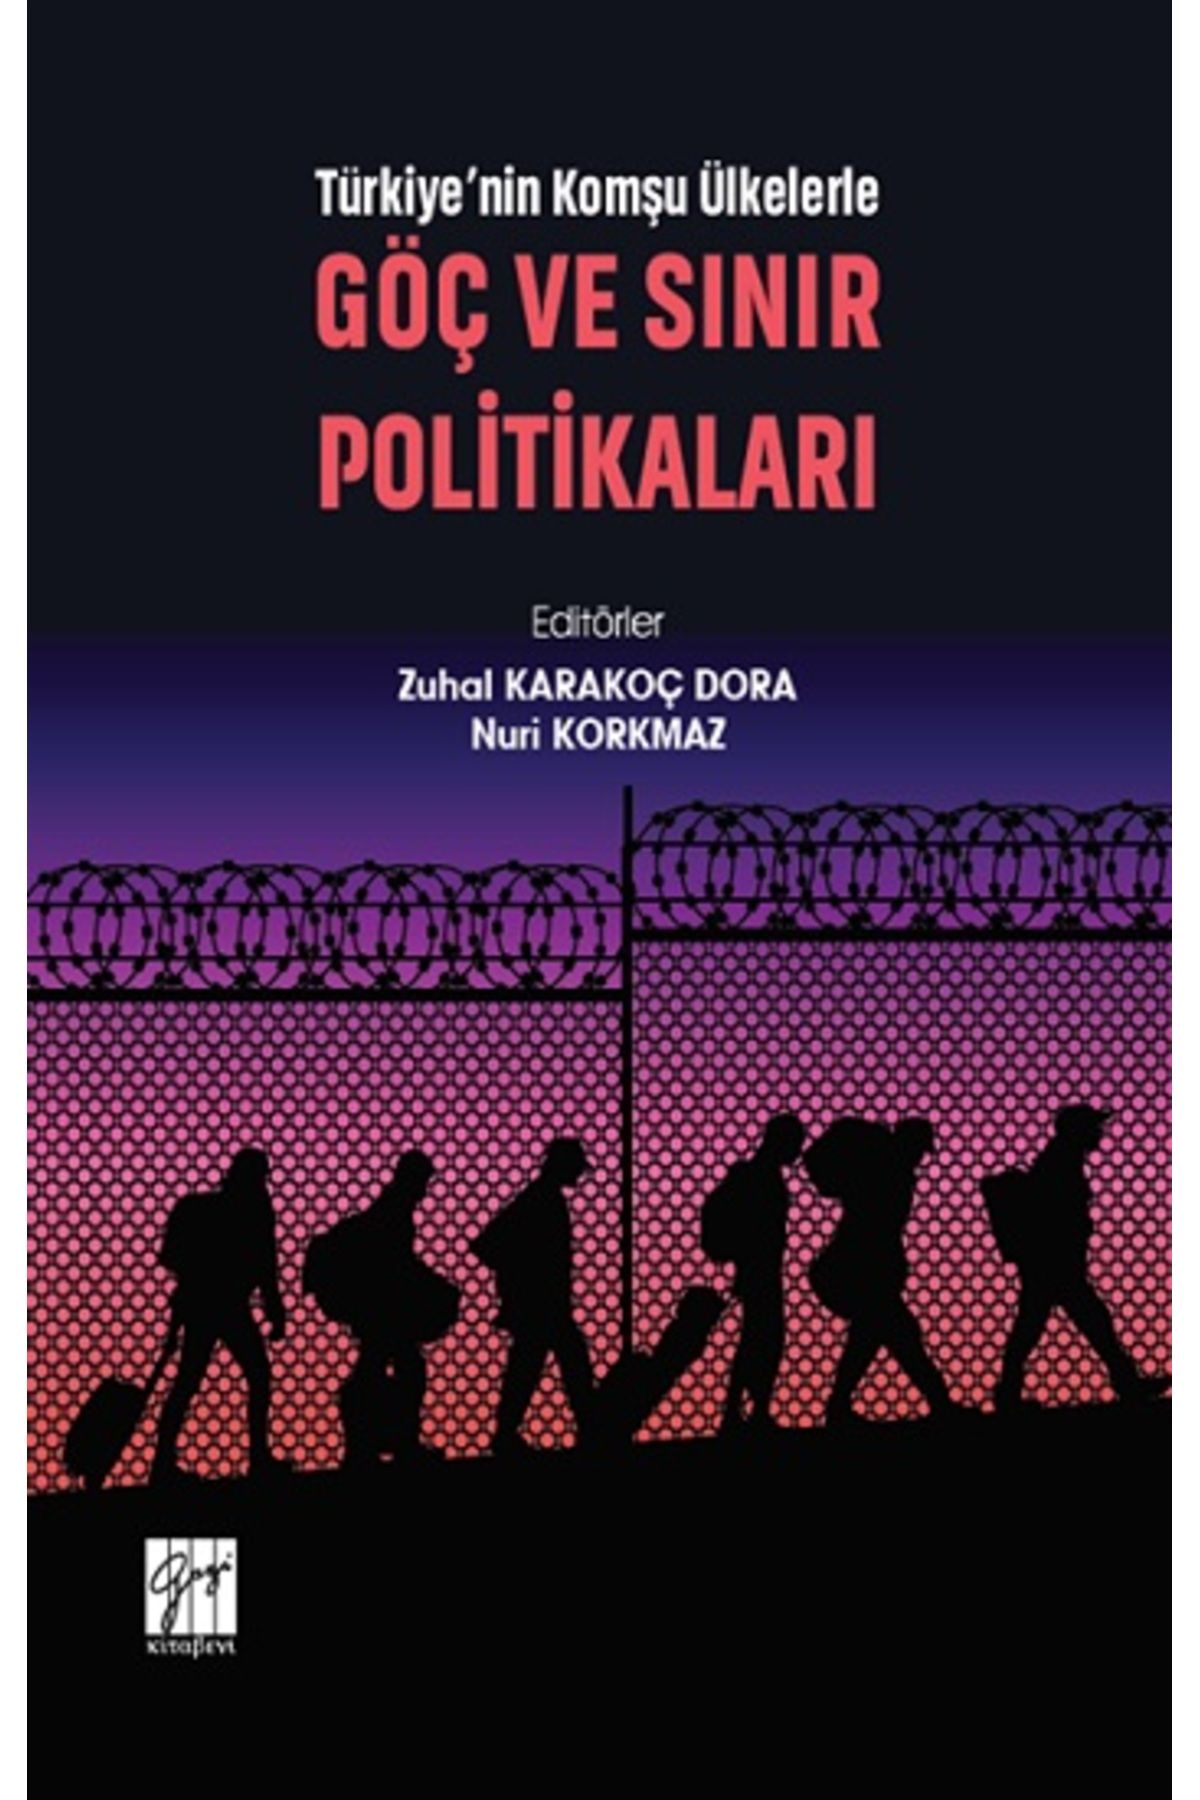 Gazi Kitabevi Türkiye'nin Komşu Ülkelerle Göç Ve Sınır Politikaları kitabı - Zuhal Karakoç Dora & Nuri Korkmaz - G